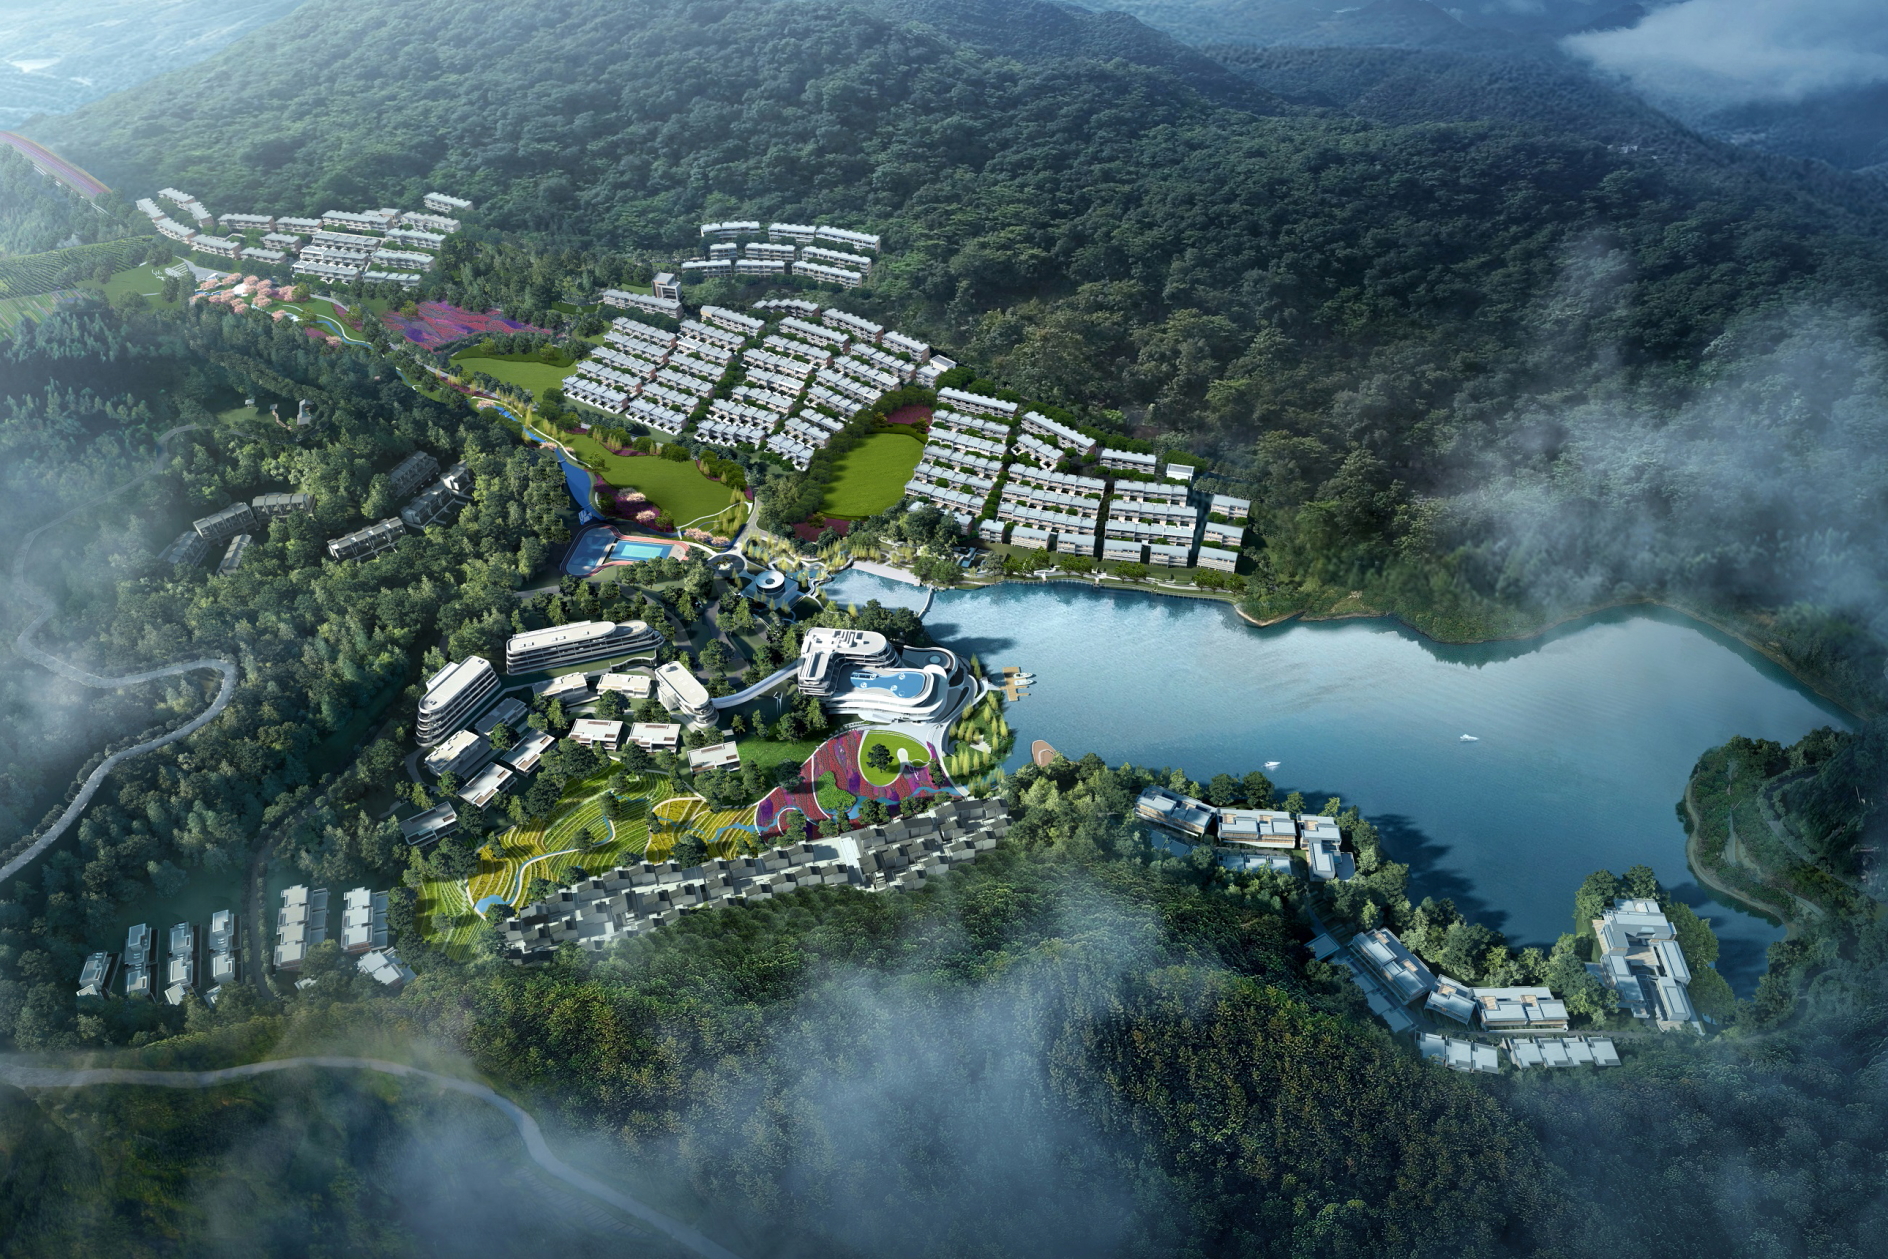 Anantara Shaoxing Resort in Zhejiang Province, China. Click to enlarge.